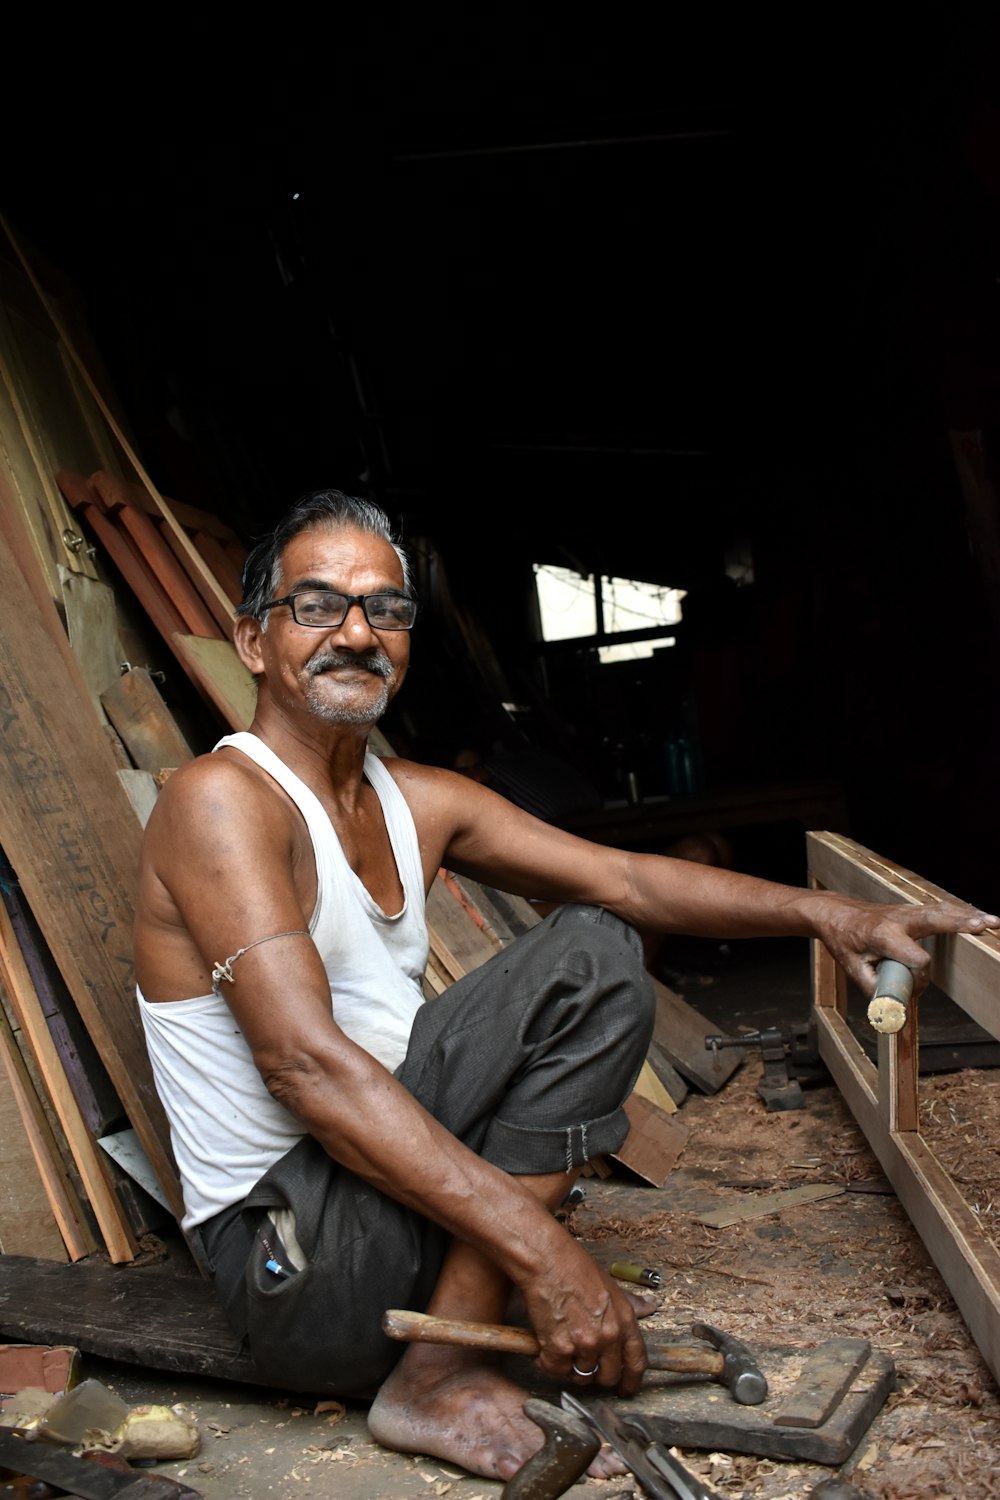 Ein Mann sitzt auf dem Boden und arbeitet an einem Stück Holz